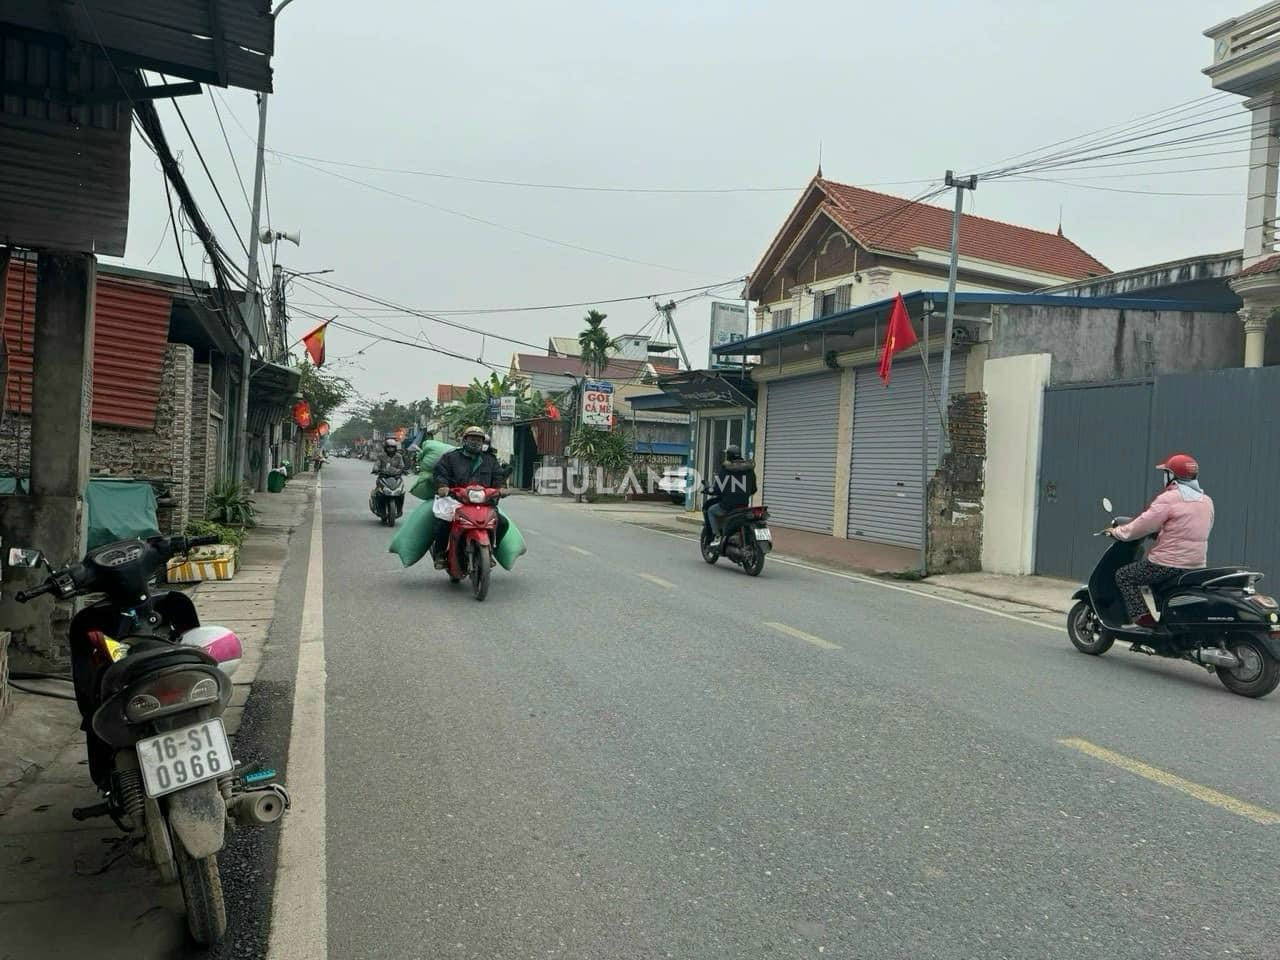 Bán đất huyện Thủy Nguyên, xã Hoa Động, 84,6m2, giá 3,6x tỷ